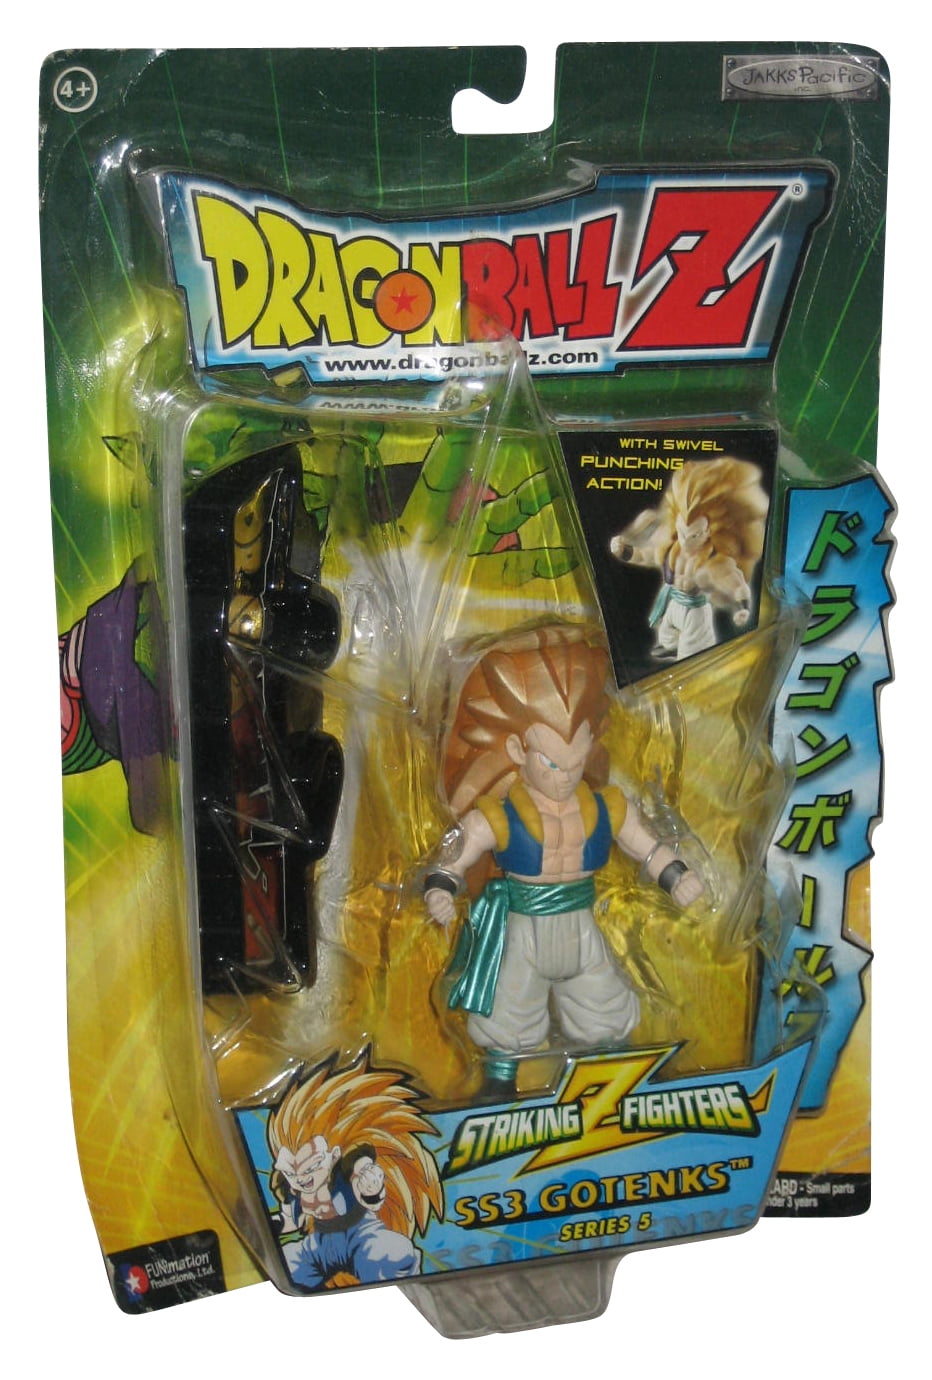 Dragon Ball Z Striking Z Fighters SS3 Gotenks (2003) Irwin Toys Series 5 Figure